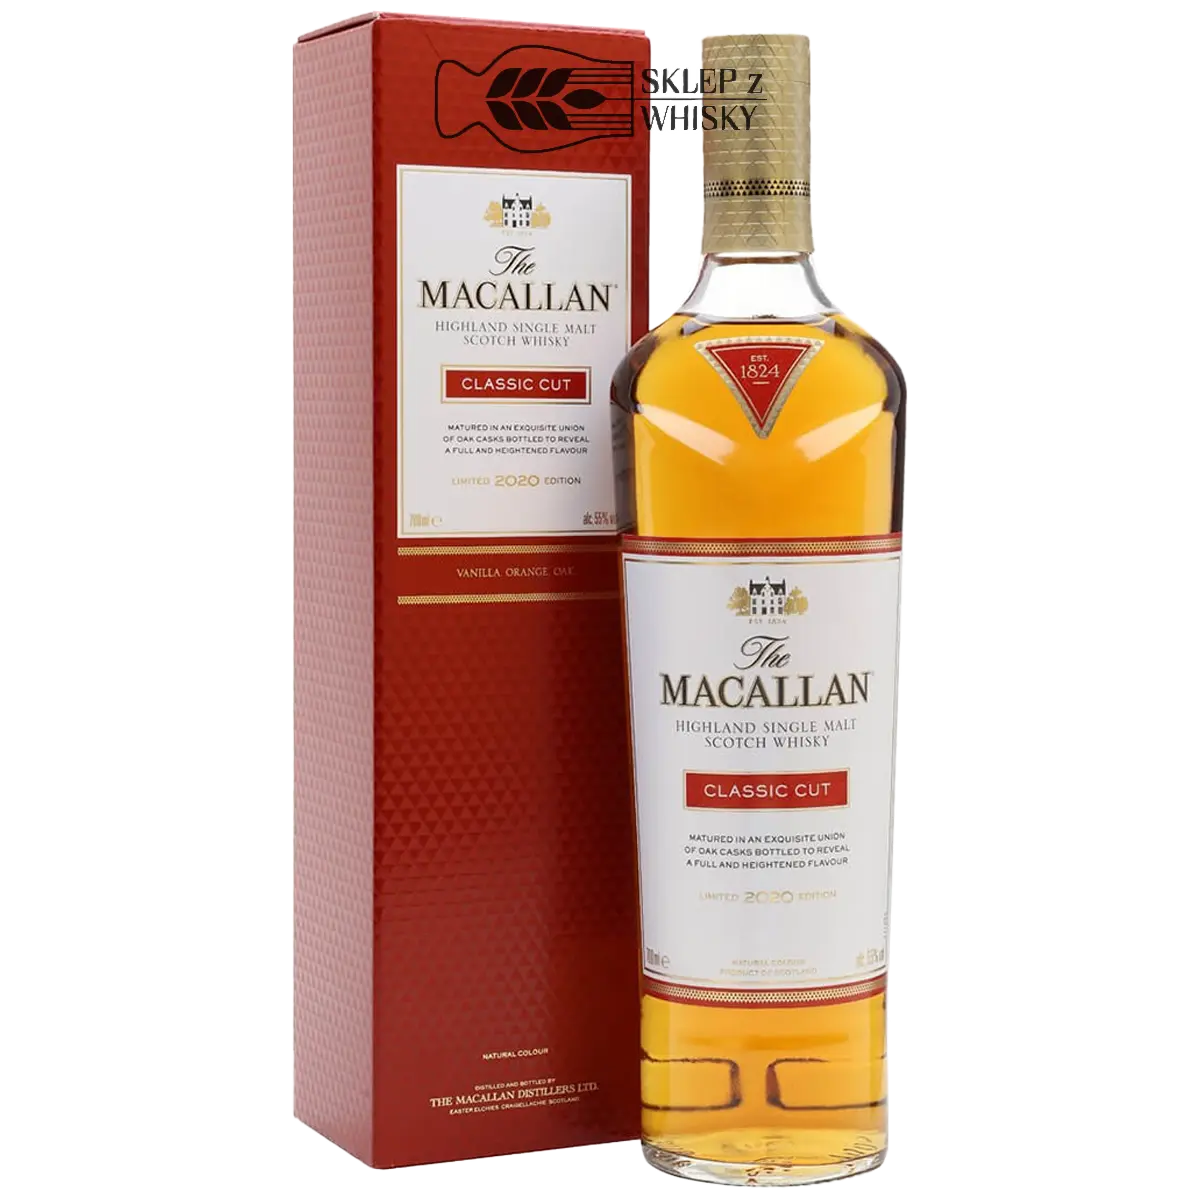 Macallan Classic Cut 2020 - szkocka whisky single malt, z regionu Speyside, 700 ml, w pudełku